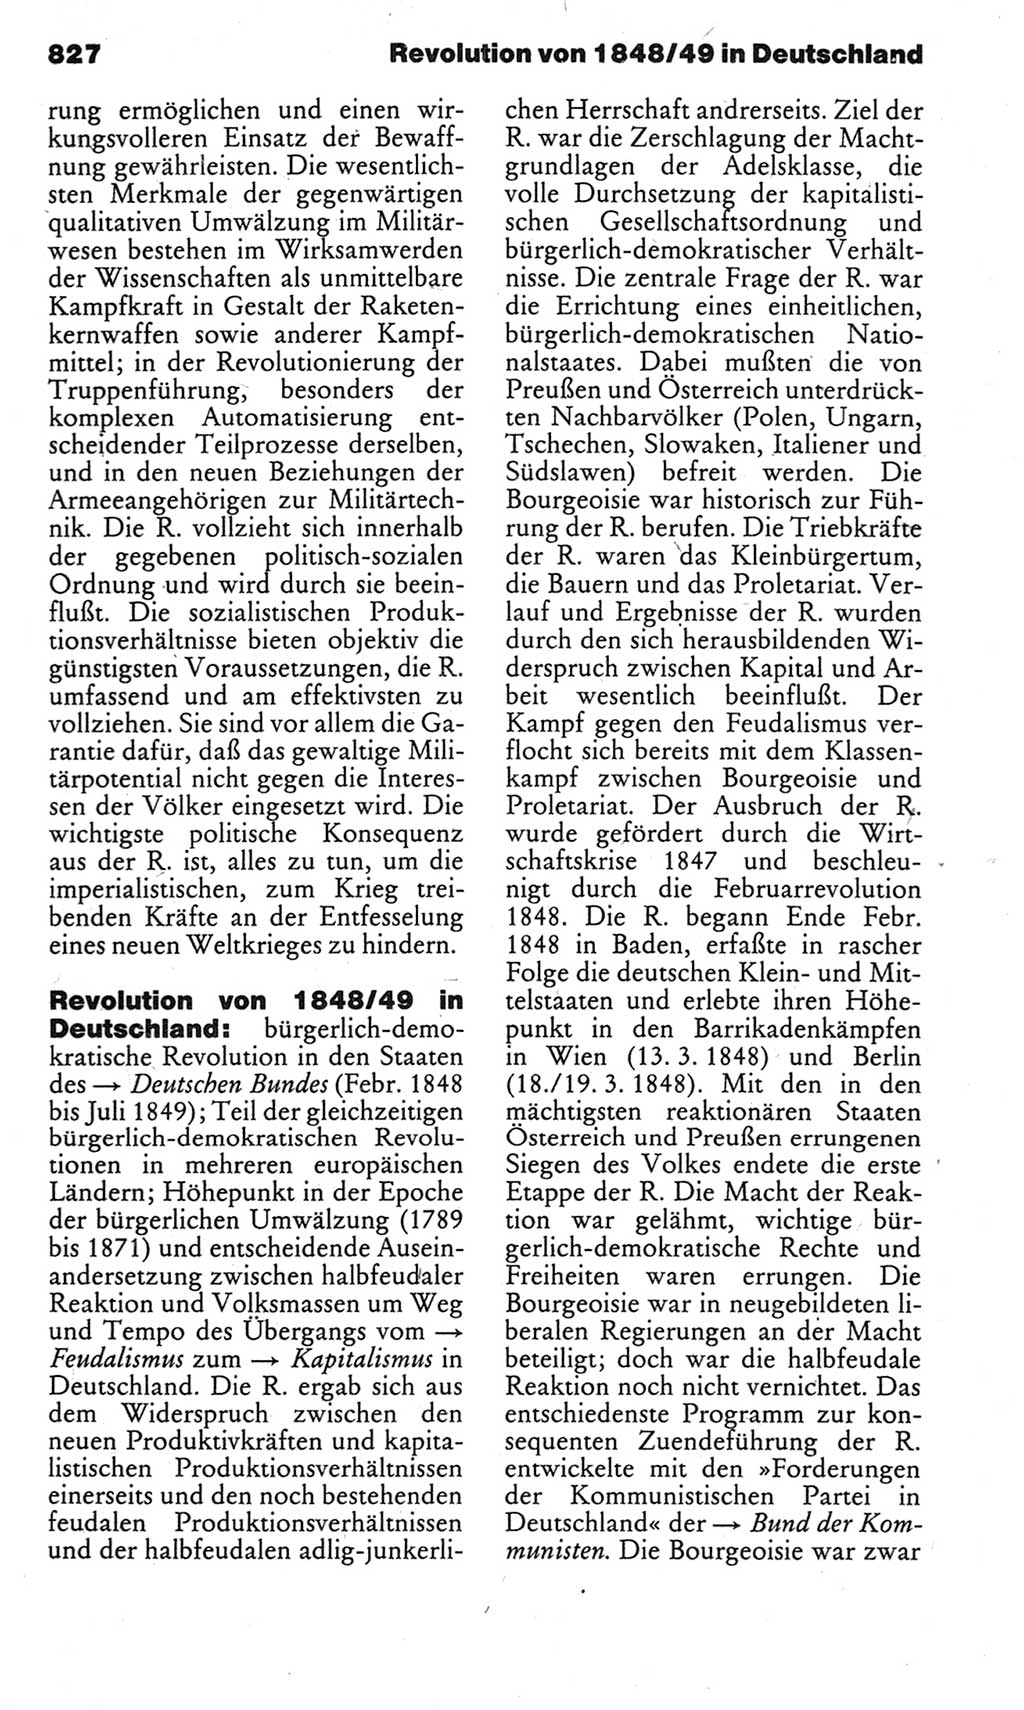 Kleines politisches Wörterbuch [Deutsche Demokratische Republik (DDR)] 1983, Seite 827 (Kl. pol. Wb. DDR 1983, S. 827)